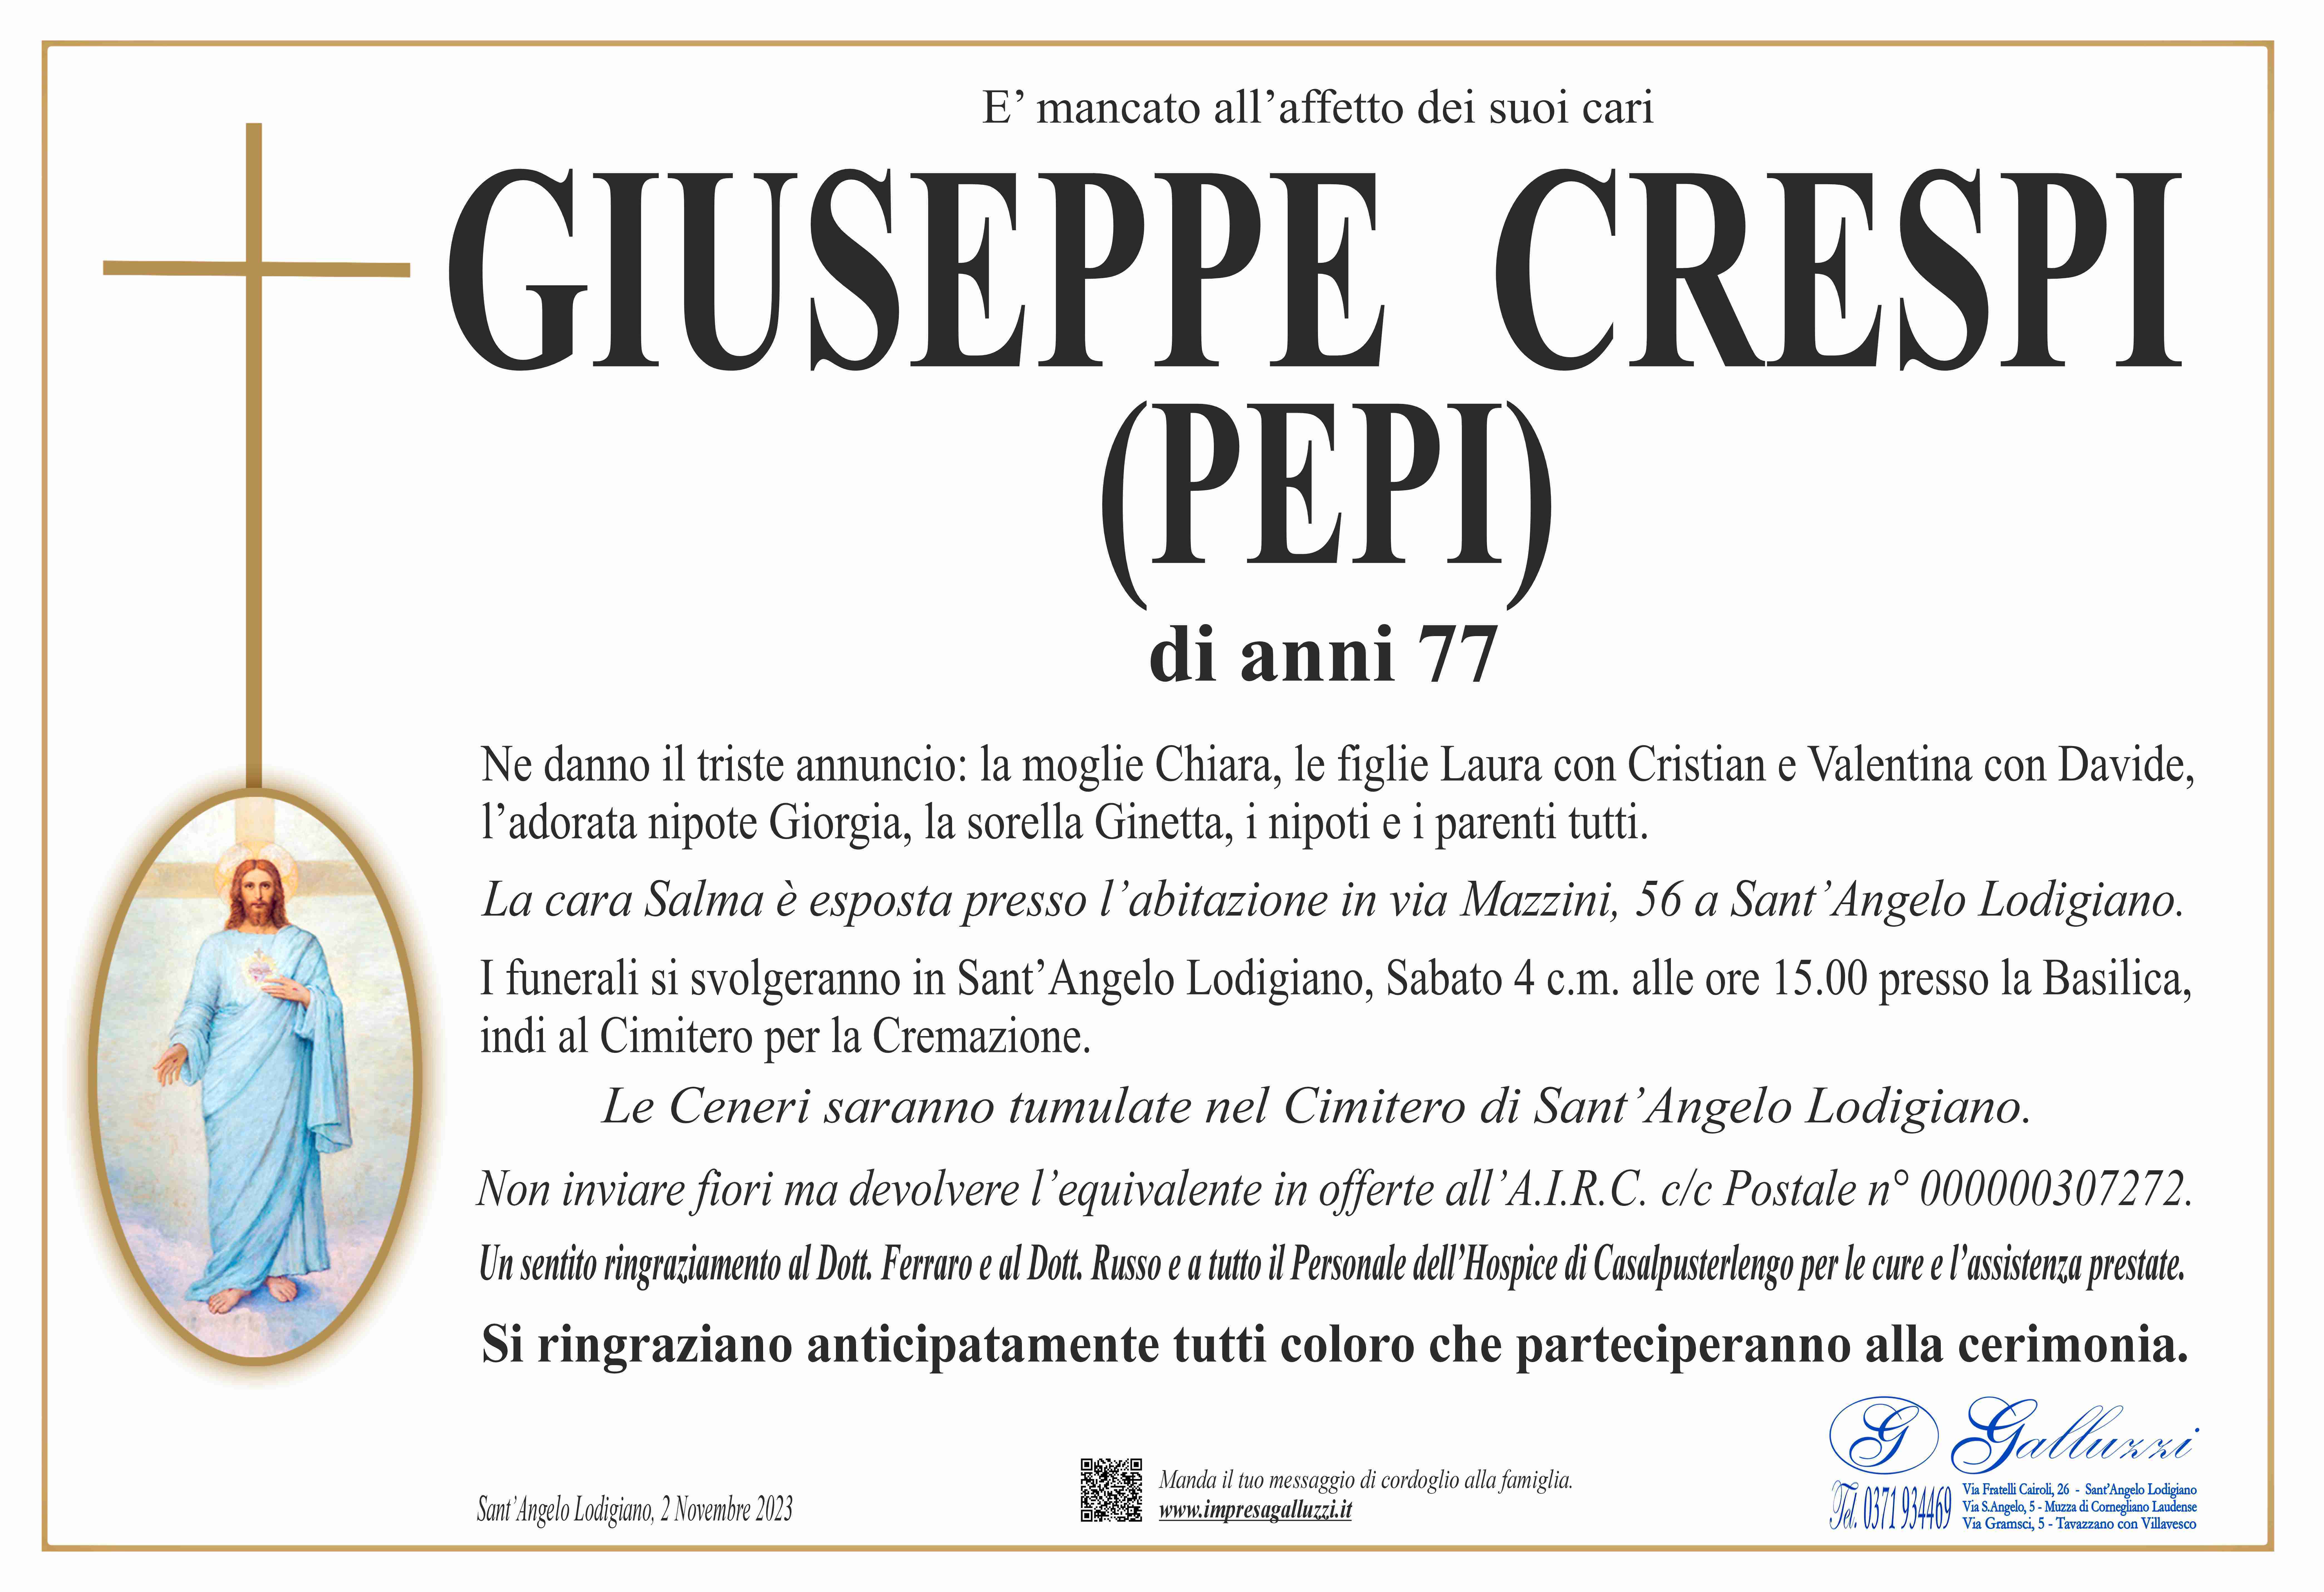 Giuseppe Crespi